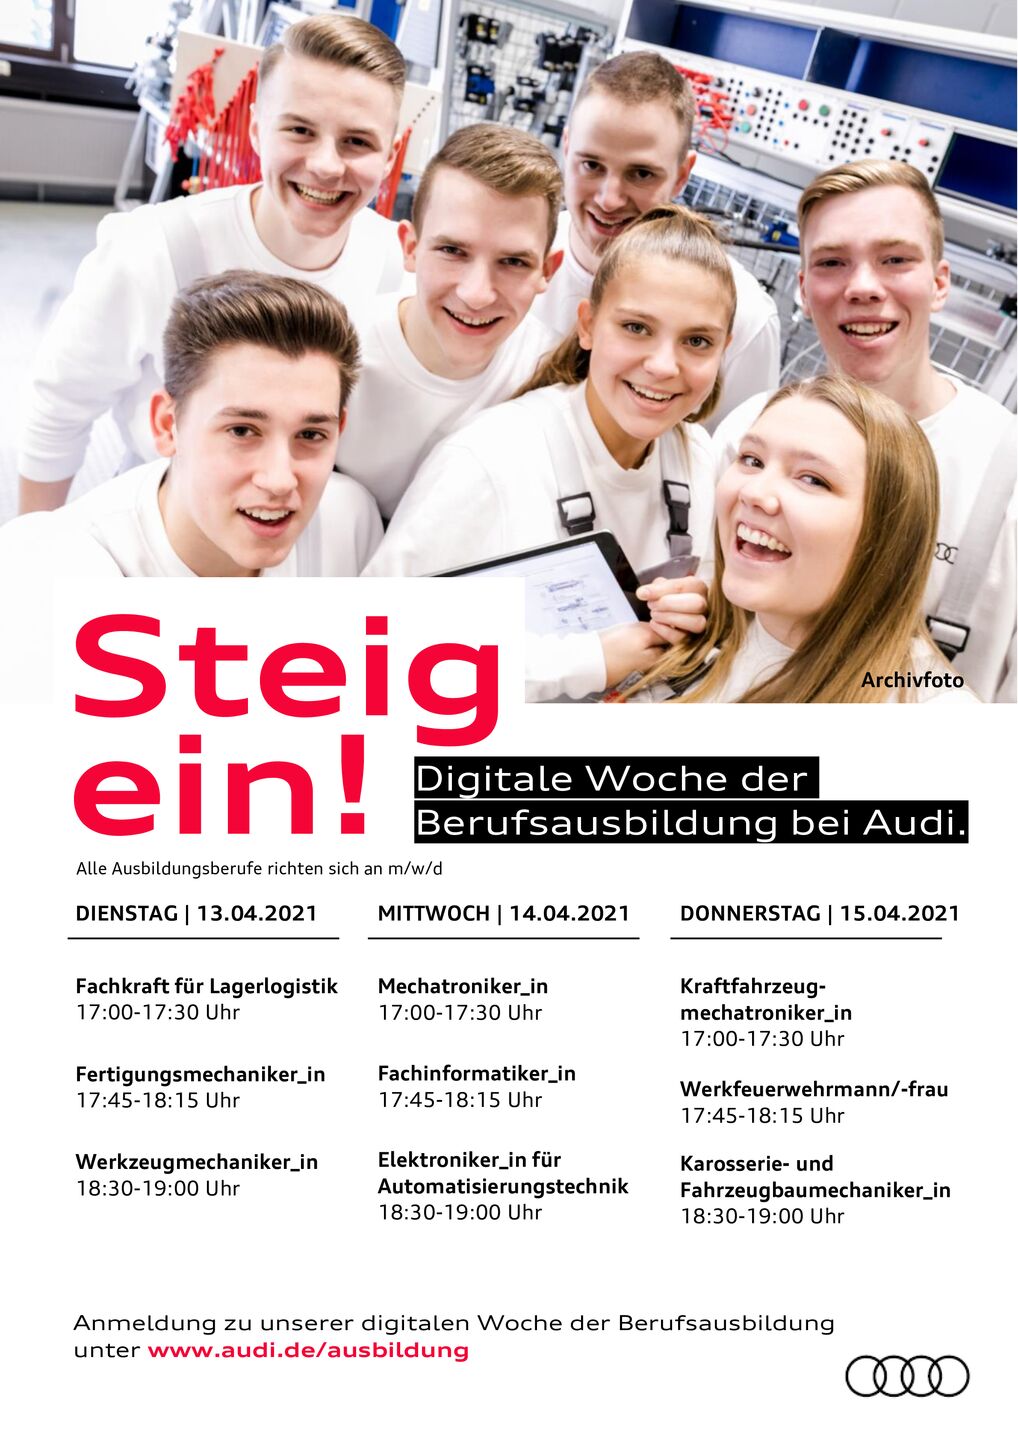 Termine zur digitalen Woche der Berufsausbildung bei Audi Neckarsulm